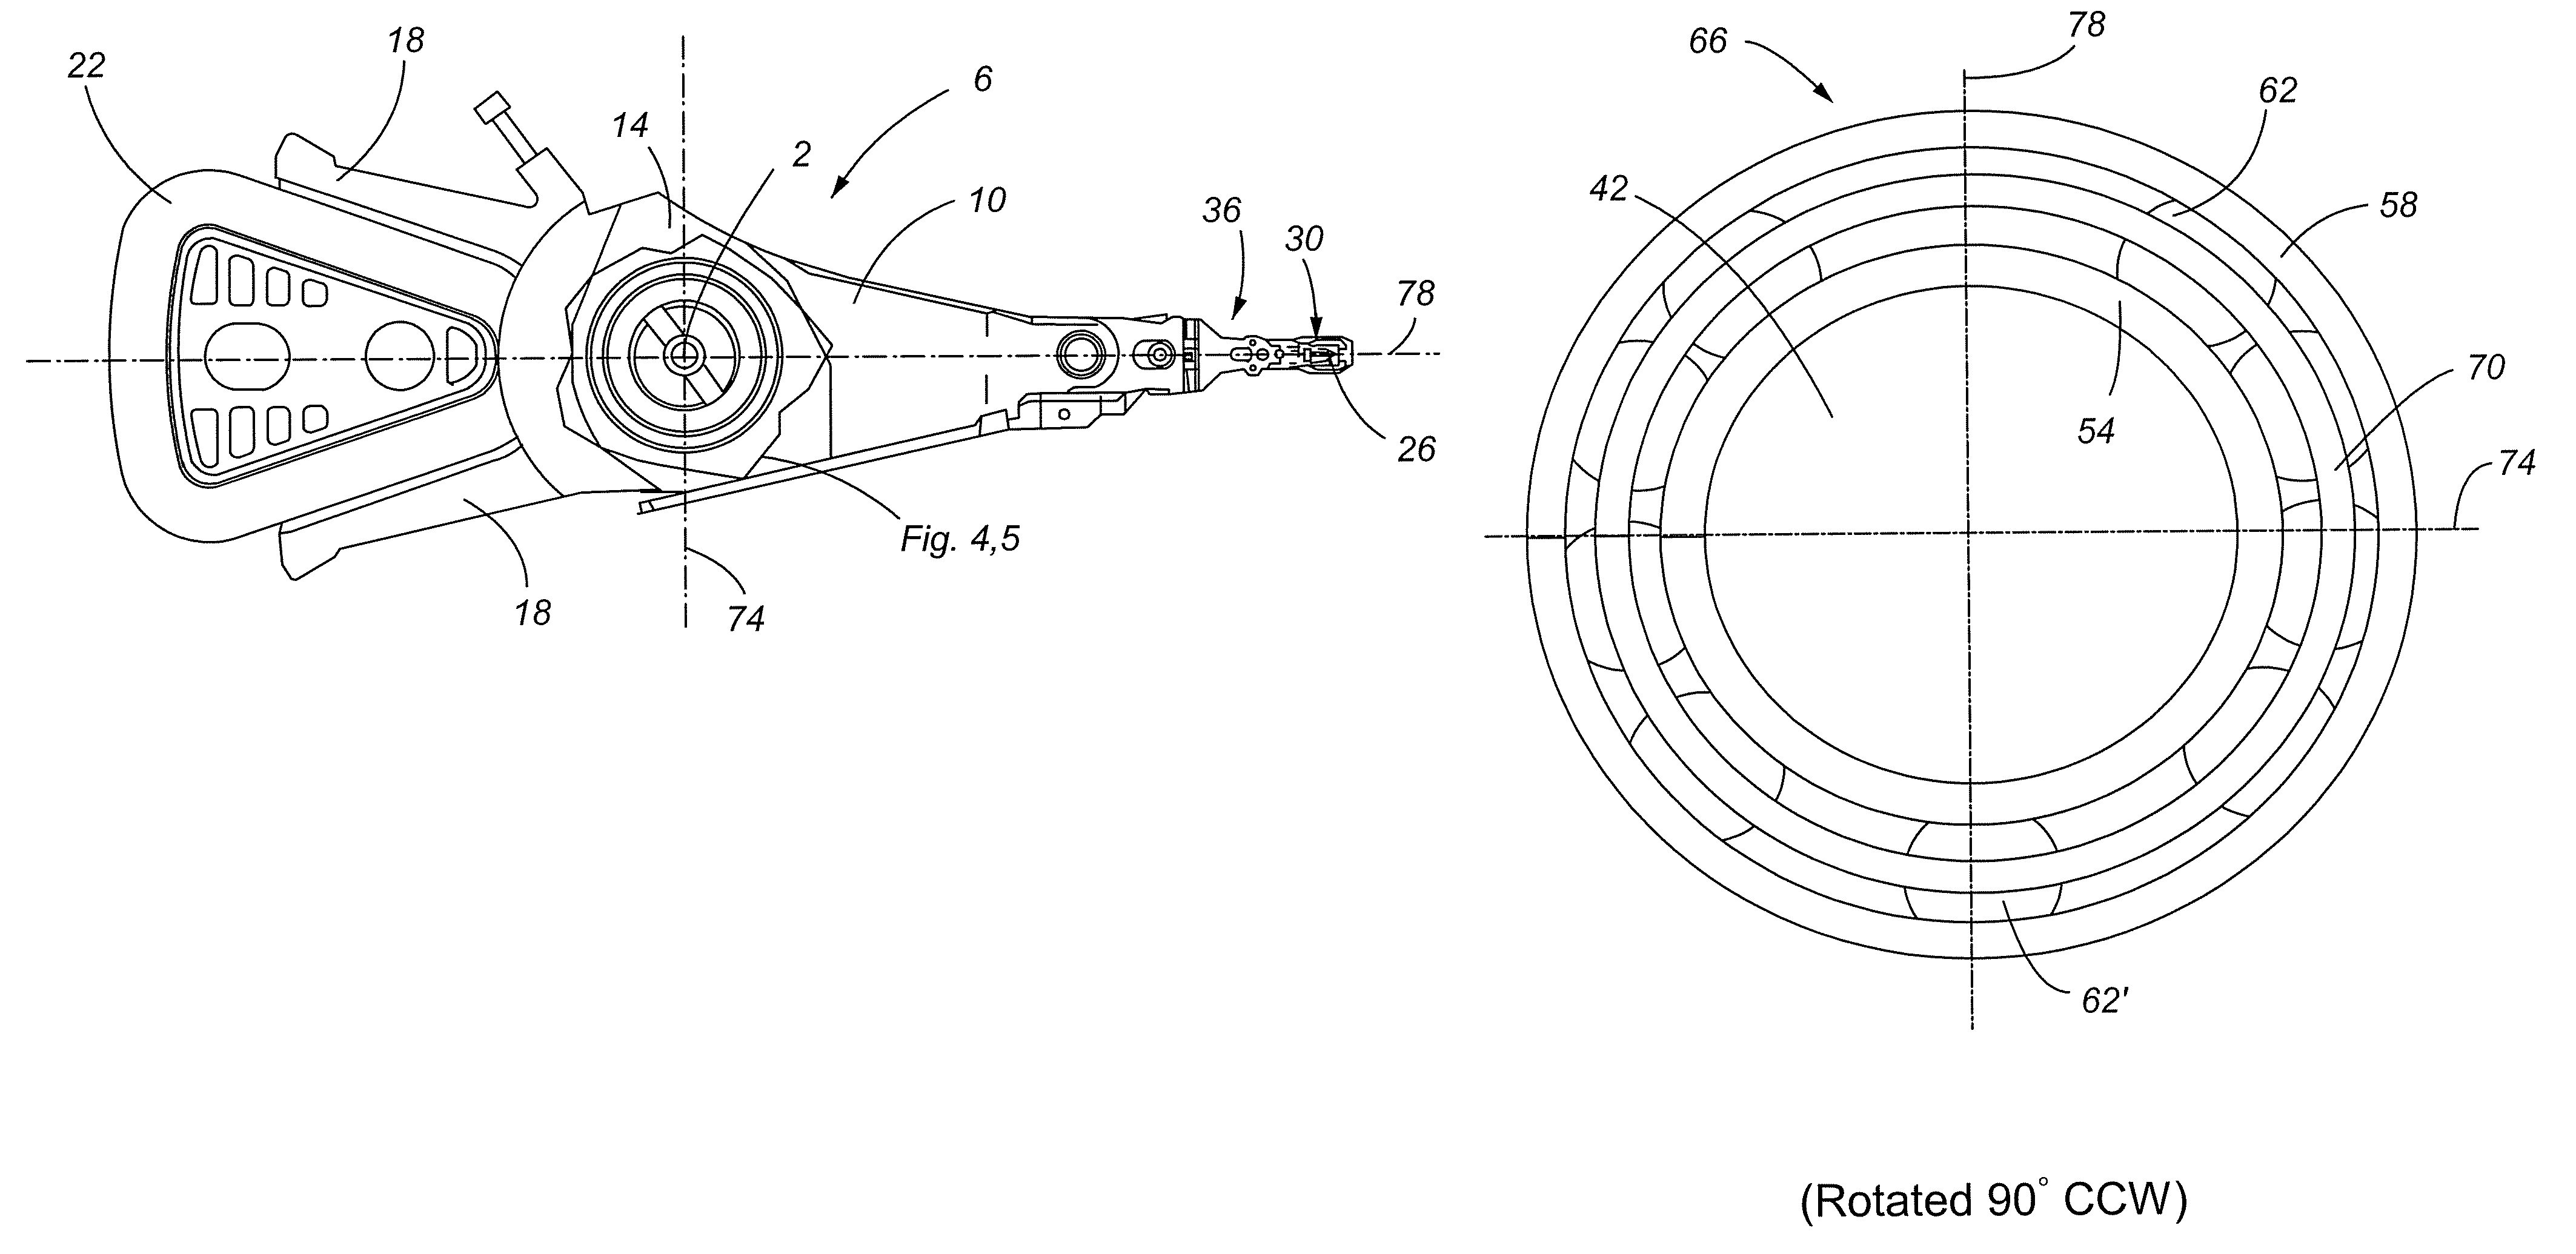 Actuator bearing having non-uniform ball spacing